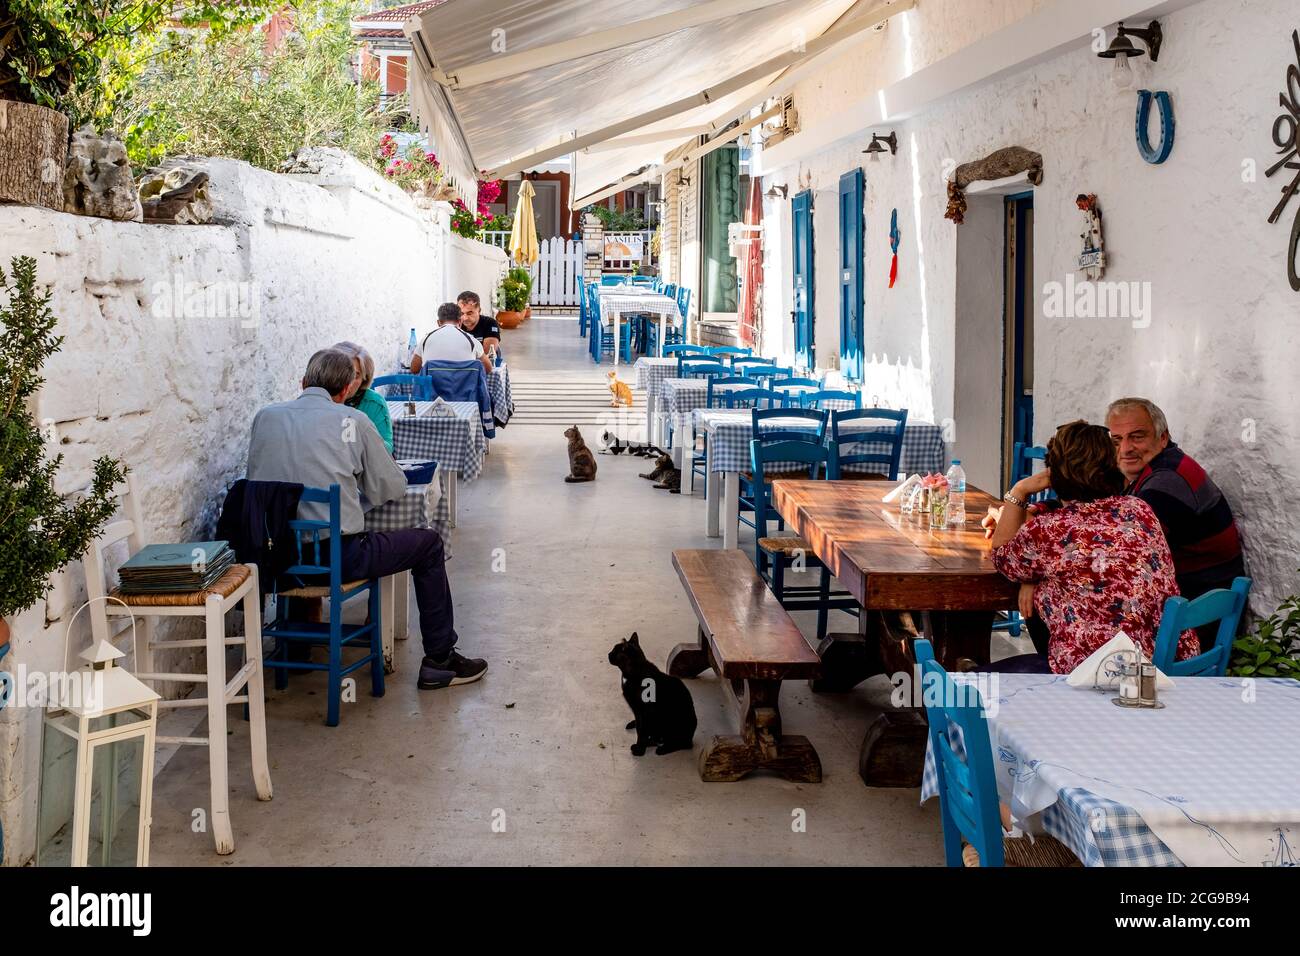 Turisti/visitatori e gatti locali presso UN ristorante sull'isola di Paxos, Grecia. Foto Stock